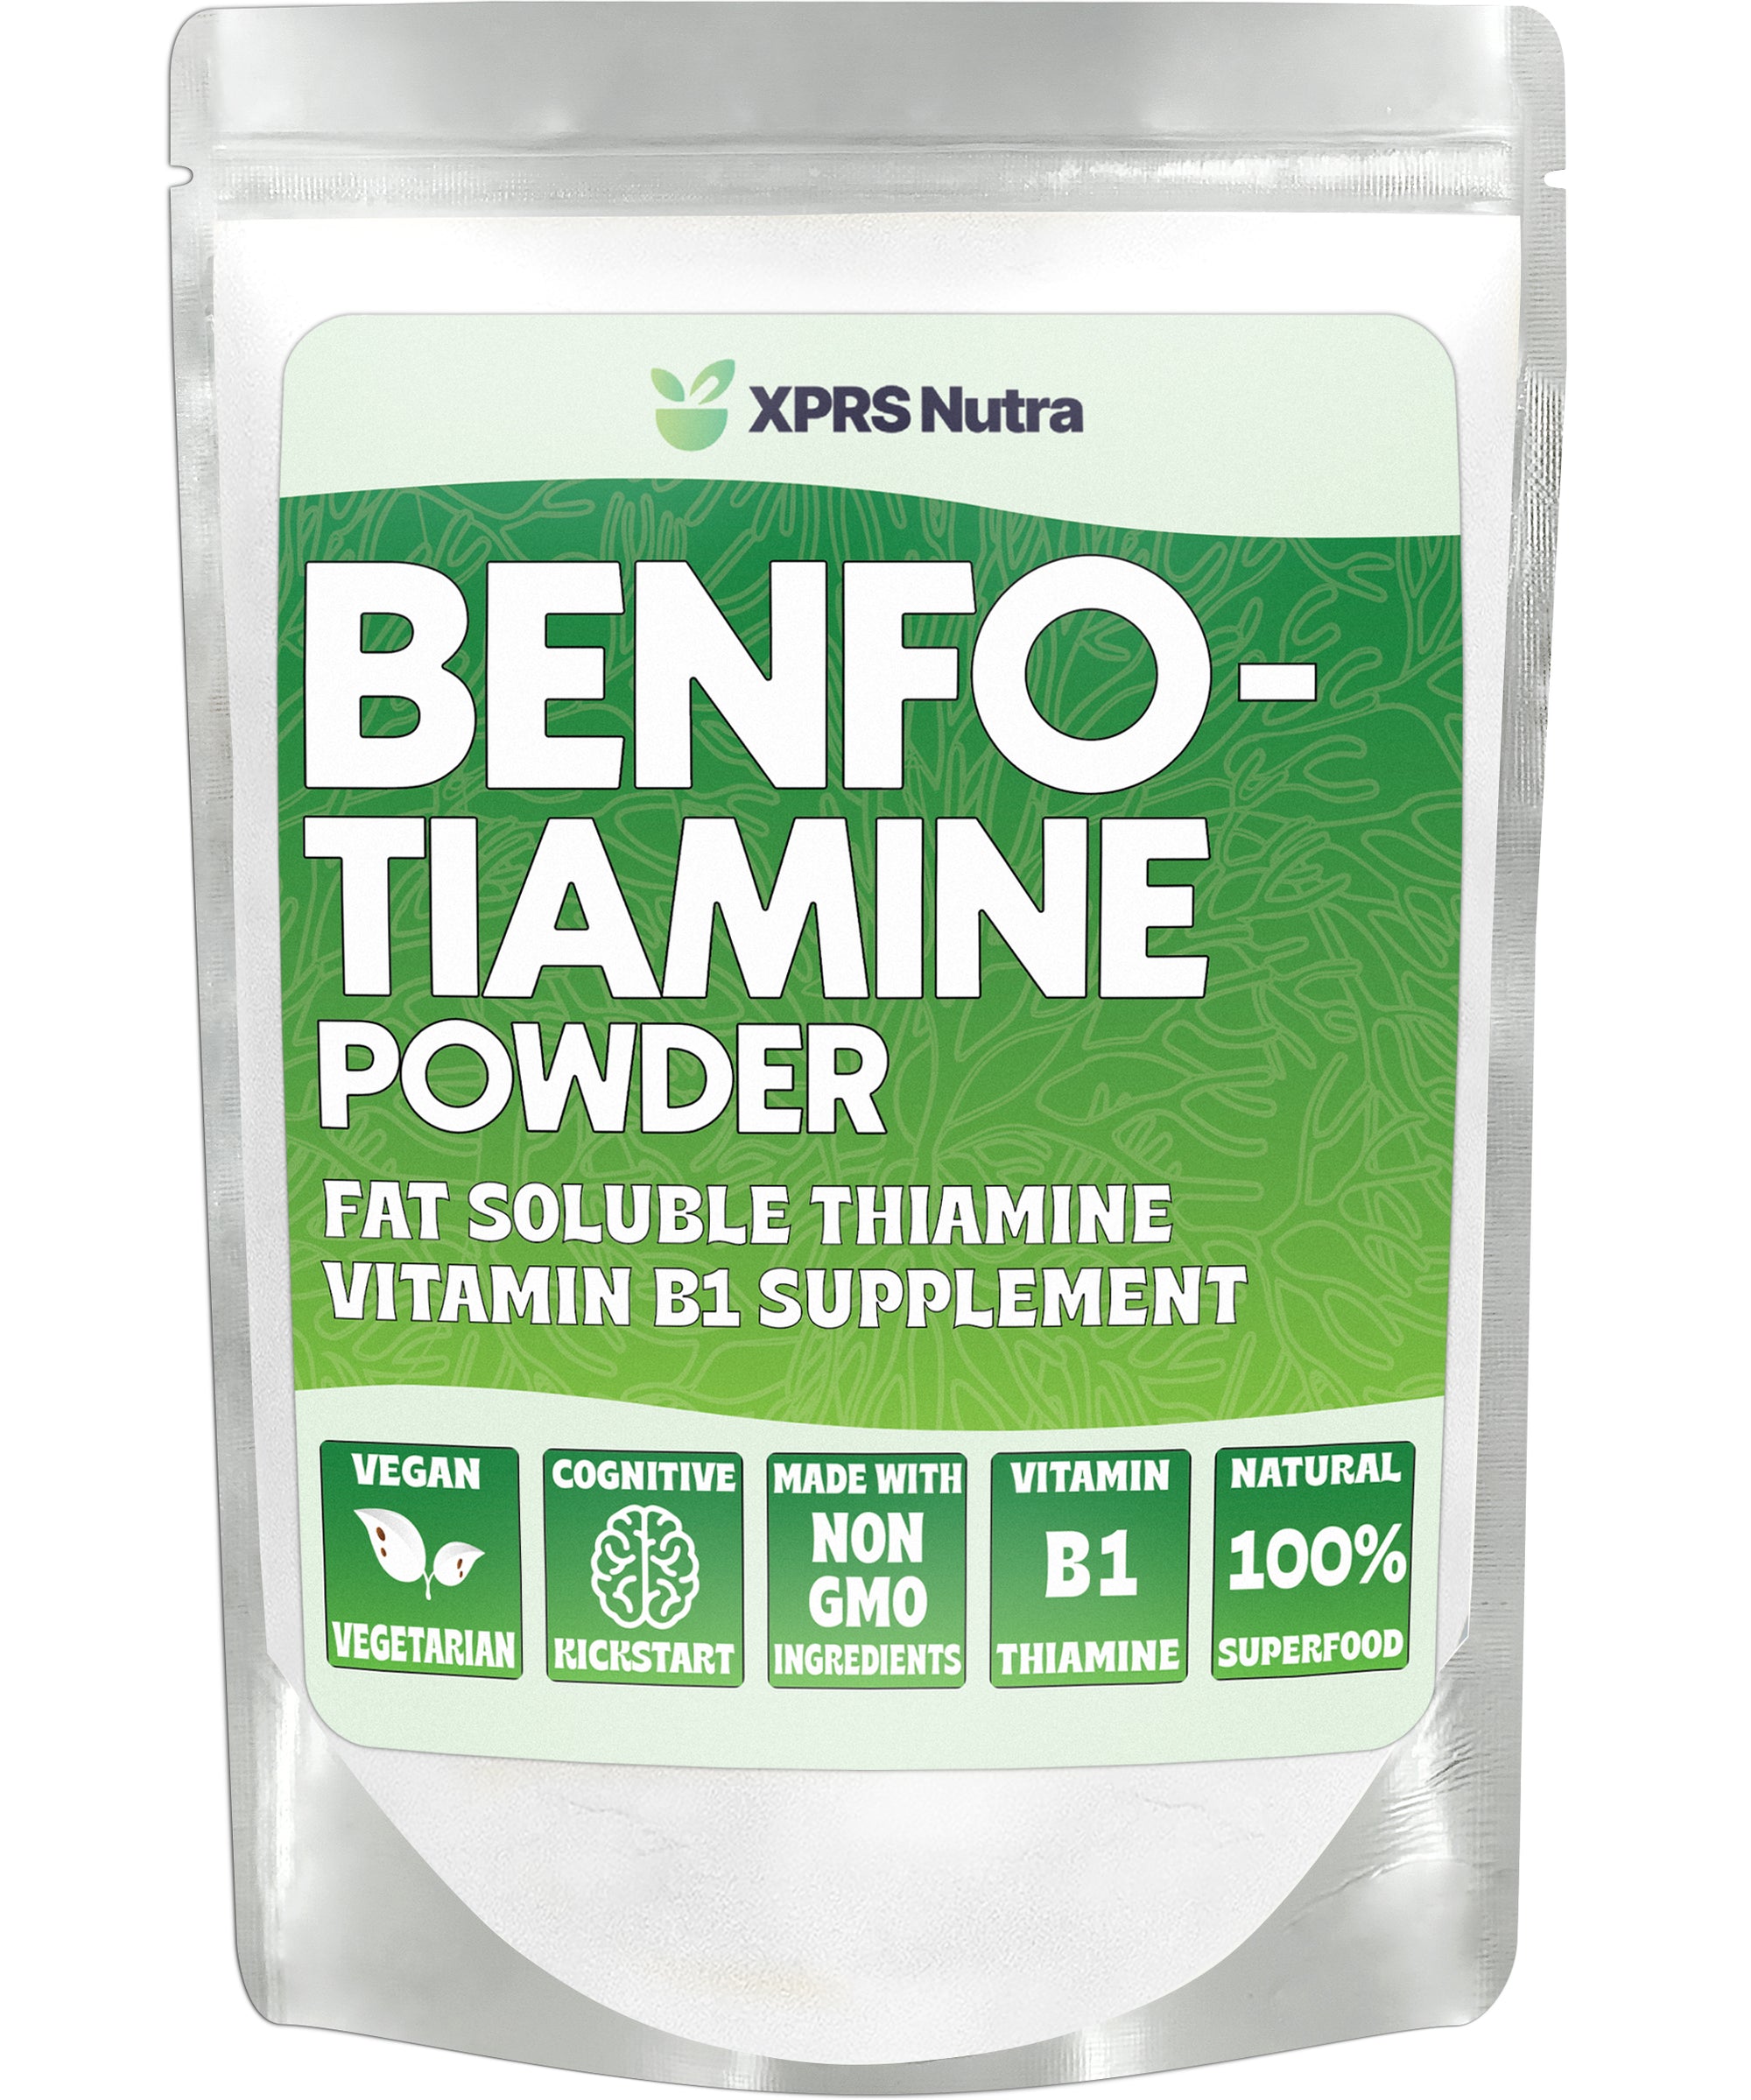 Benfotiamine Powder (Thiamine Supplement)